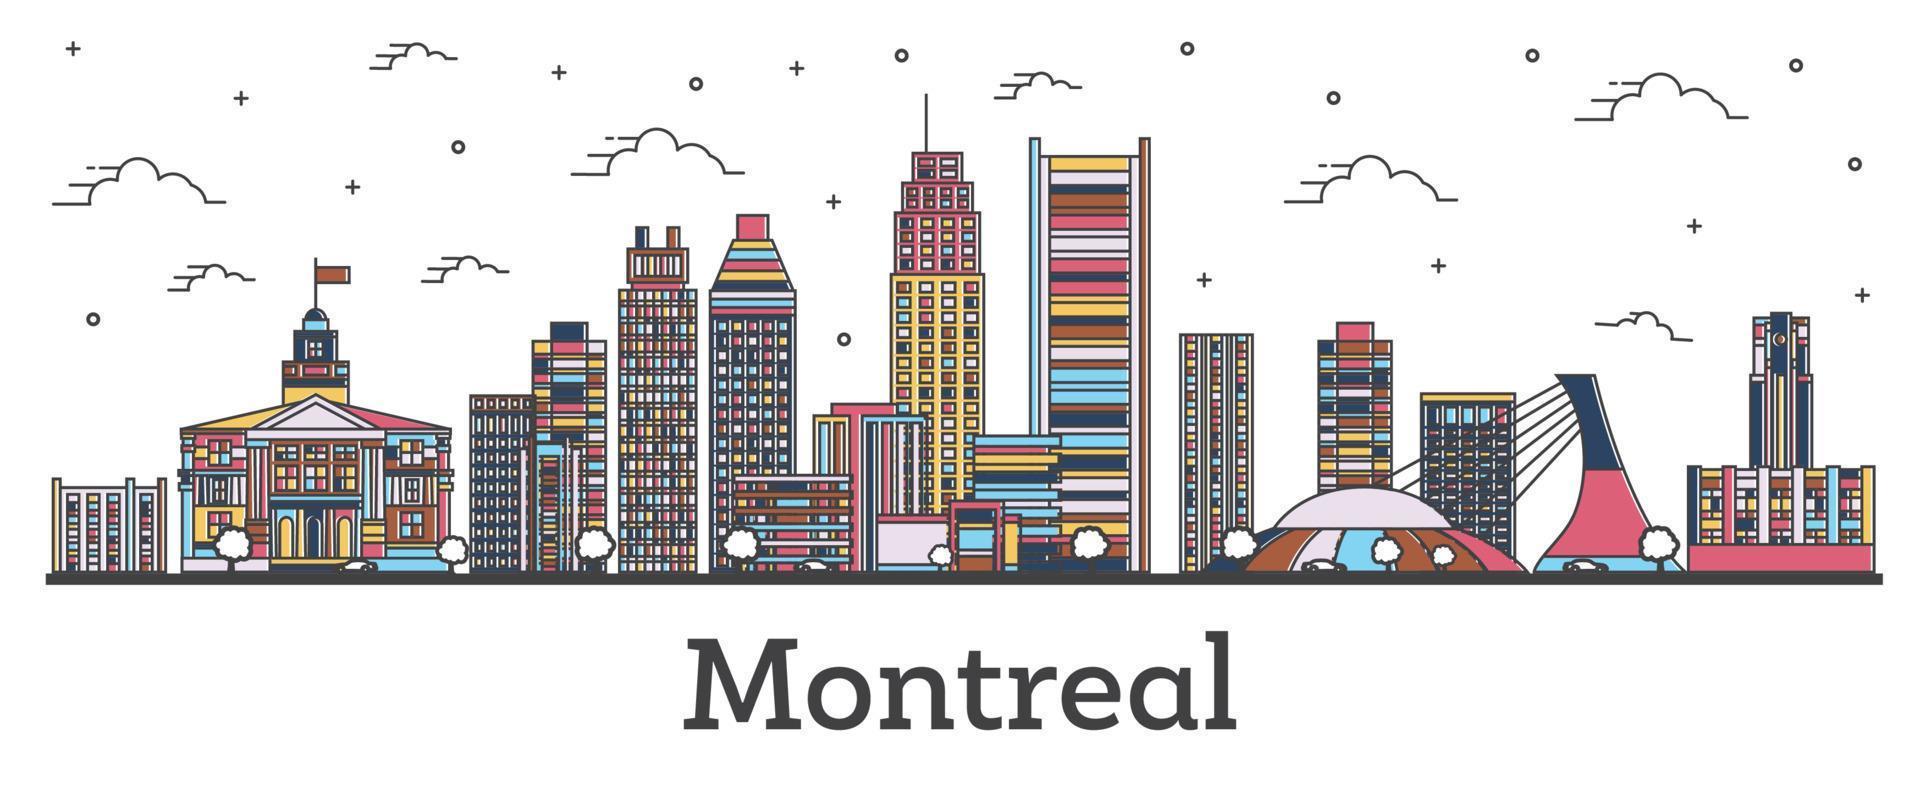 delineie o horizonte da cidade de montreal canadá com edifícios coloridos isolados em branco. vetor